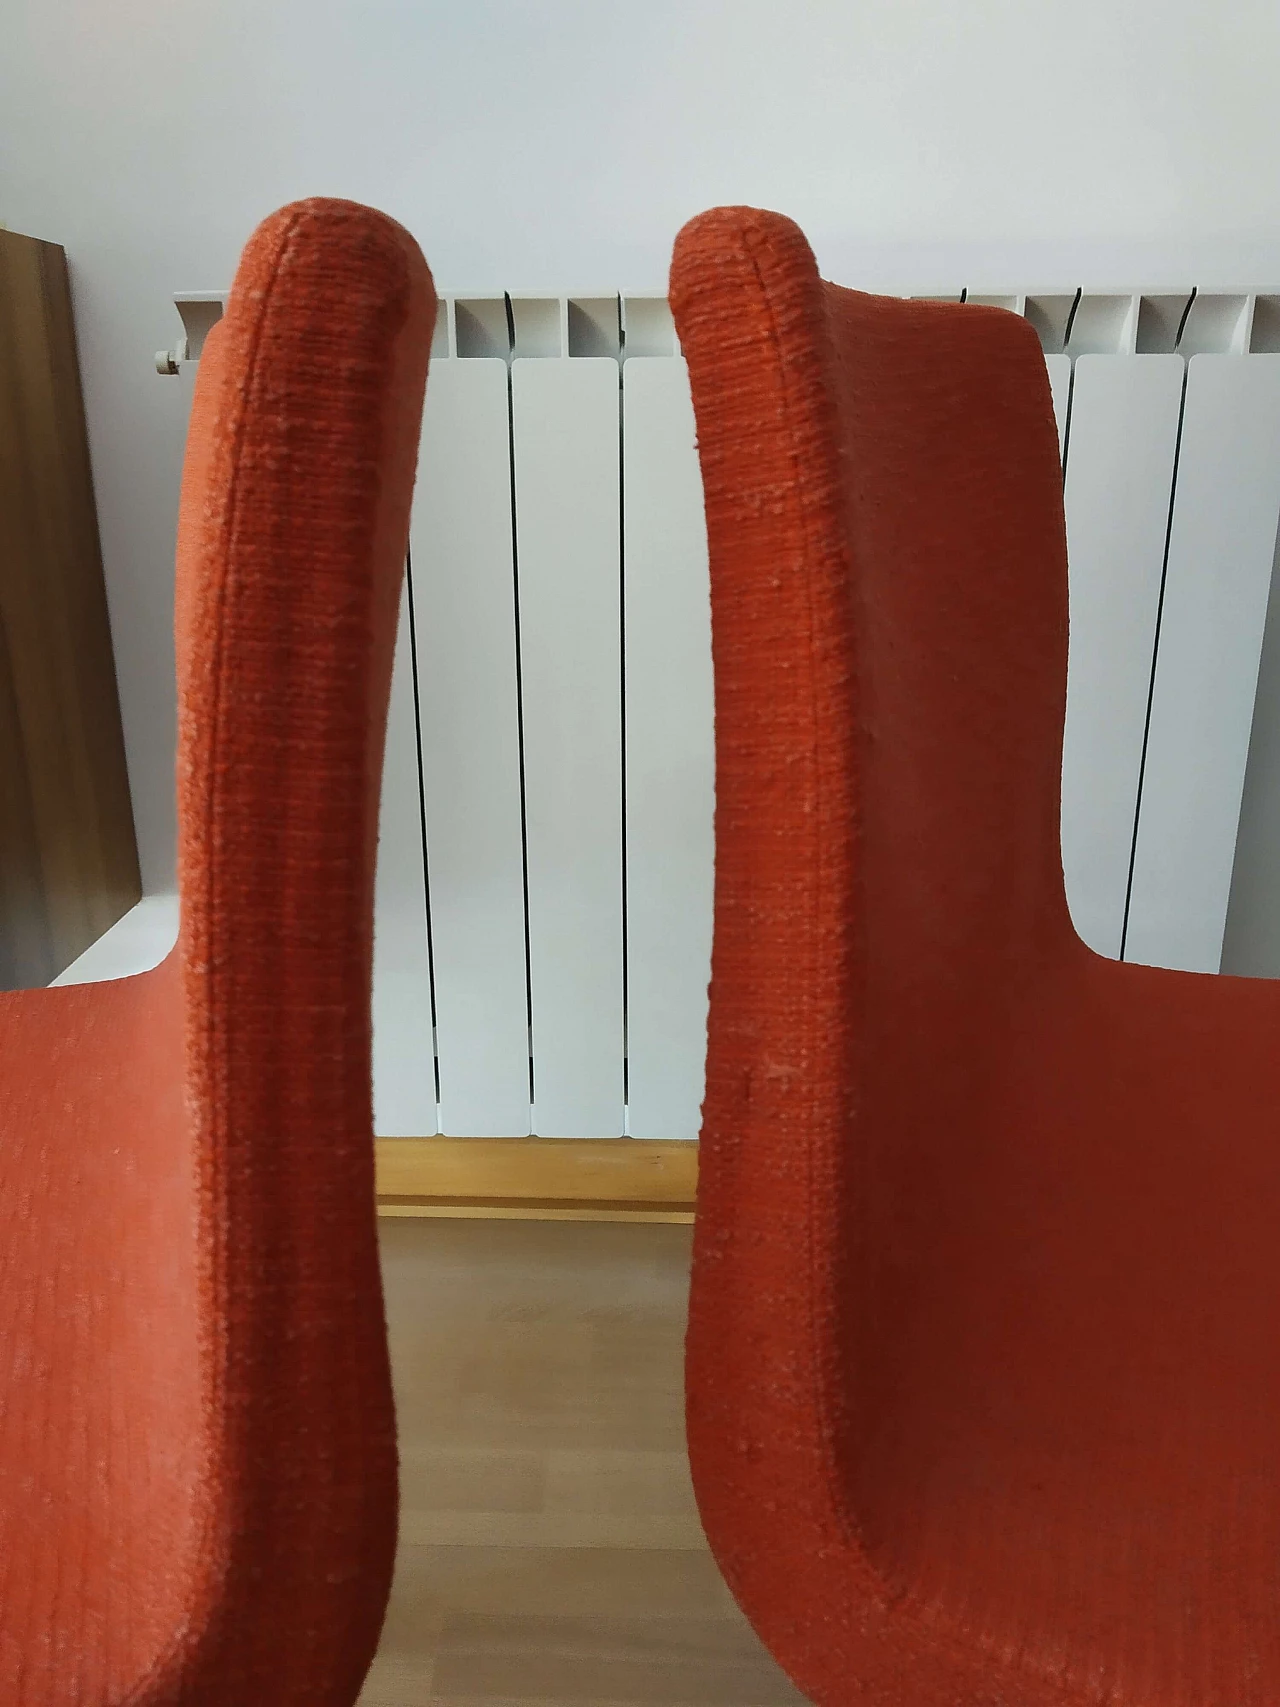 4 Hella Chairs by Mauro Lipparini for MisuraEmme 1477212